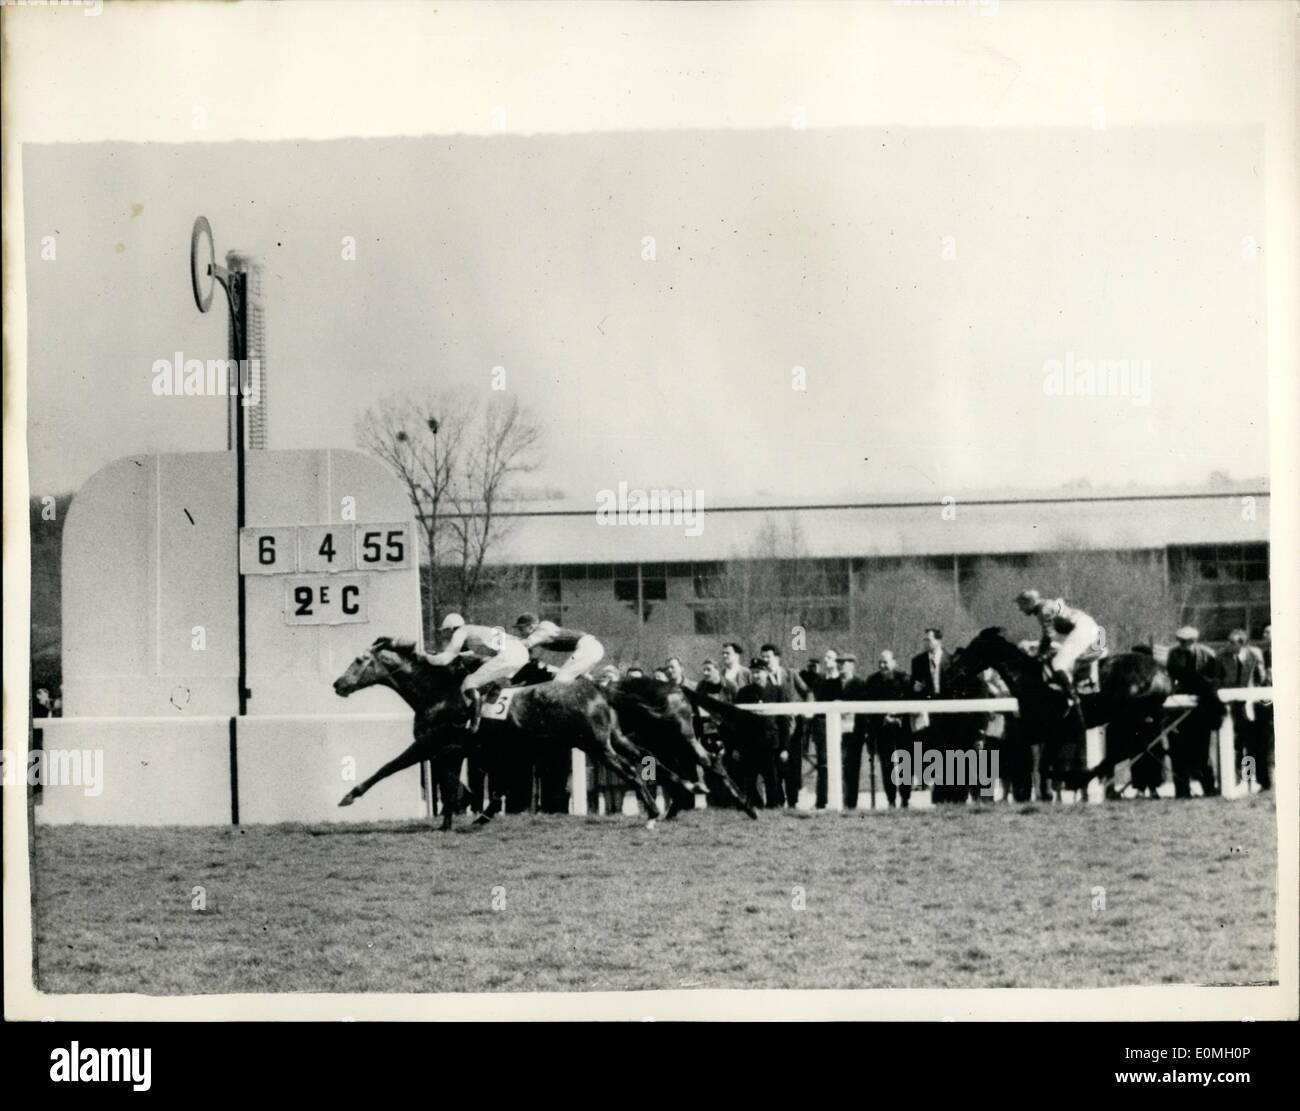 Abril 04, 1955 - El Capitán Townsend va/en una carrera - y gana de pasar el Post: Grupo capitán Peter Townsend ayer tomó parte en una carrera de caballos en Maisons-Laffitte, cerca de París y ganó en ''Nimrod''. La foto muestra el acabado de la raza como Peter Townsend, pasa el post sobre ''Nimrod" para ganar la carrera del caballero en Maisons-Laffitte. Foto de stock